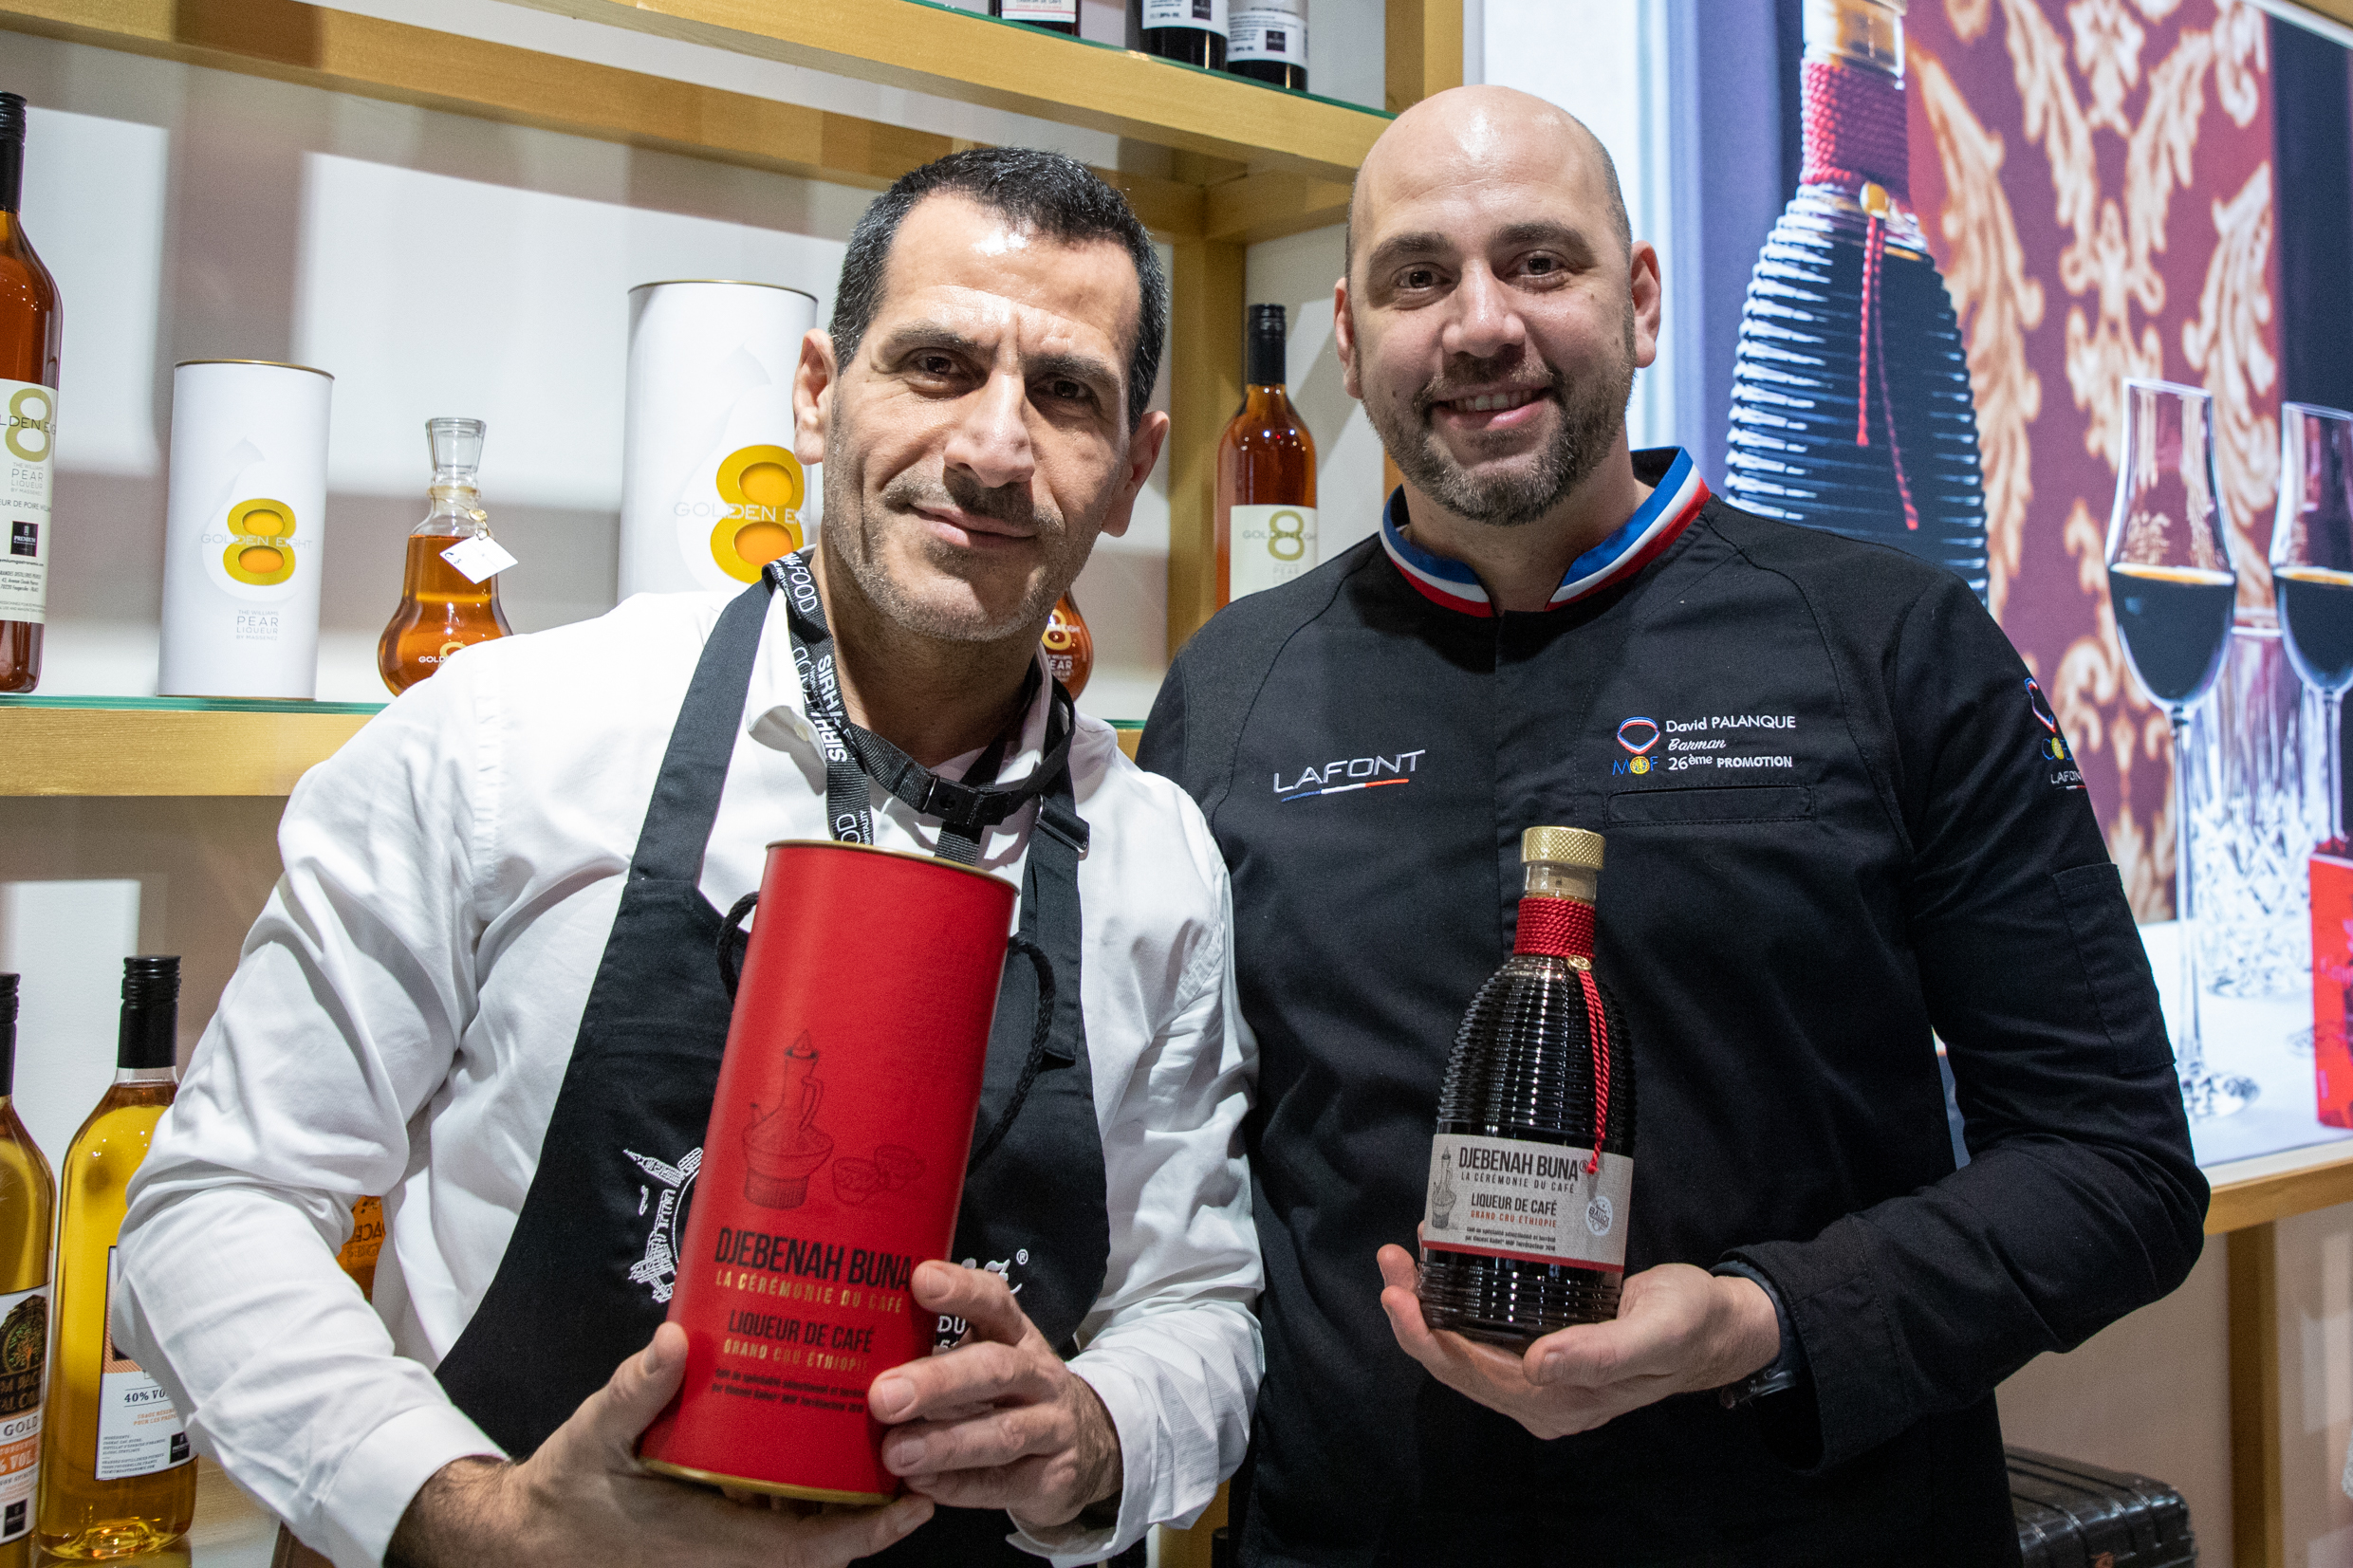 Pierre Boueri, mixologiste, et David Palanque, barman meilleur ouvrier de France